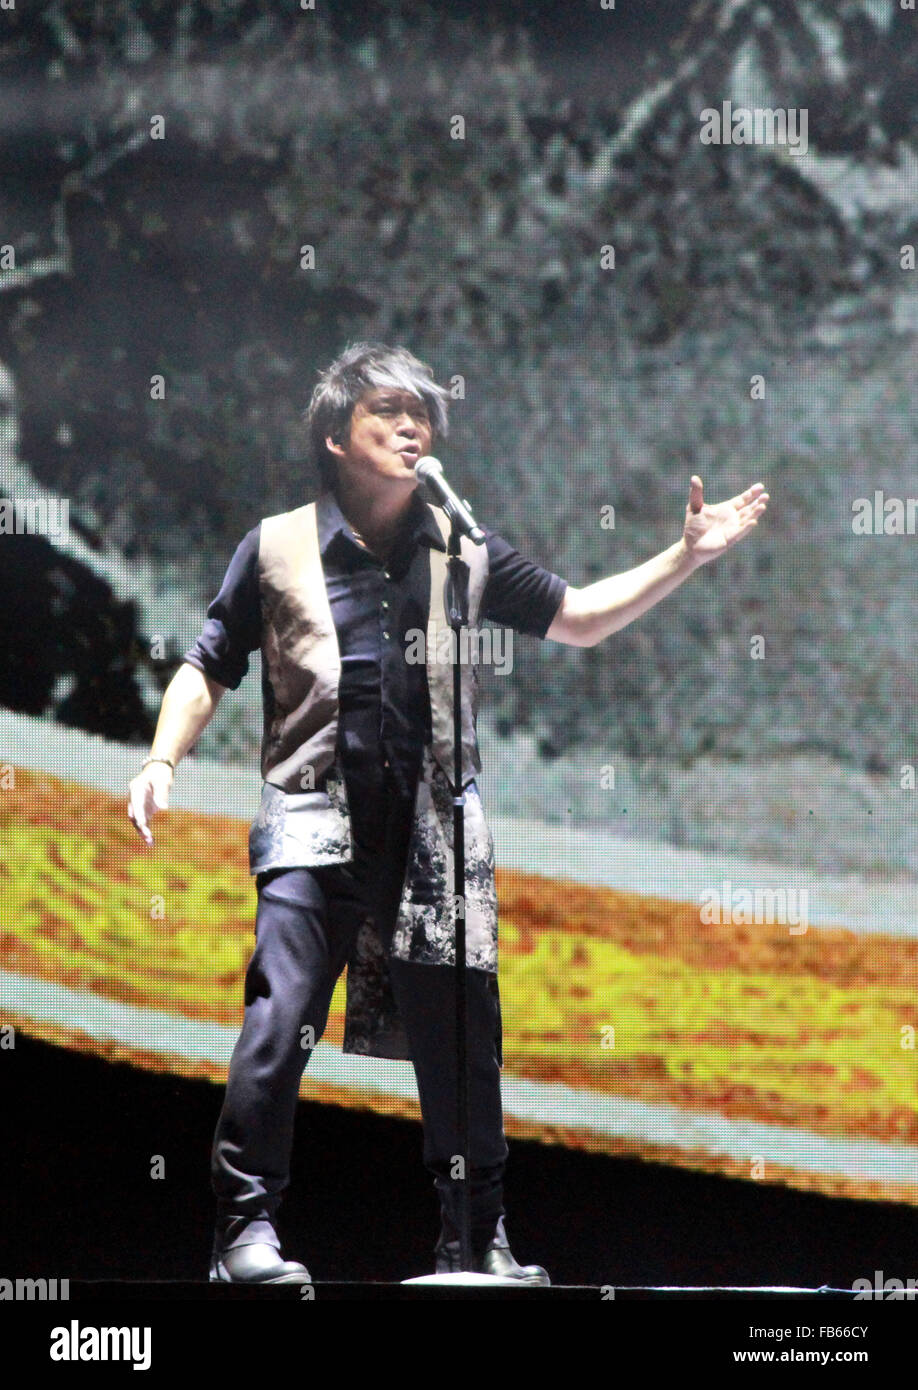 Nanjing, China's Jiangsu Province. 9th Jan, 2016. Singer Emil Wakin Chau performs during his concert in Nanjing, capital of east China's Jiangsu Province, Jan. 9, 2016. © Wang Qiming/Xinhua/Alamy Live News Stock Photo